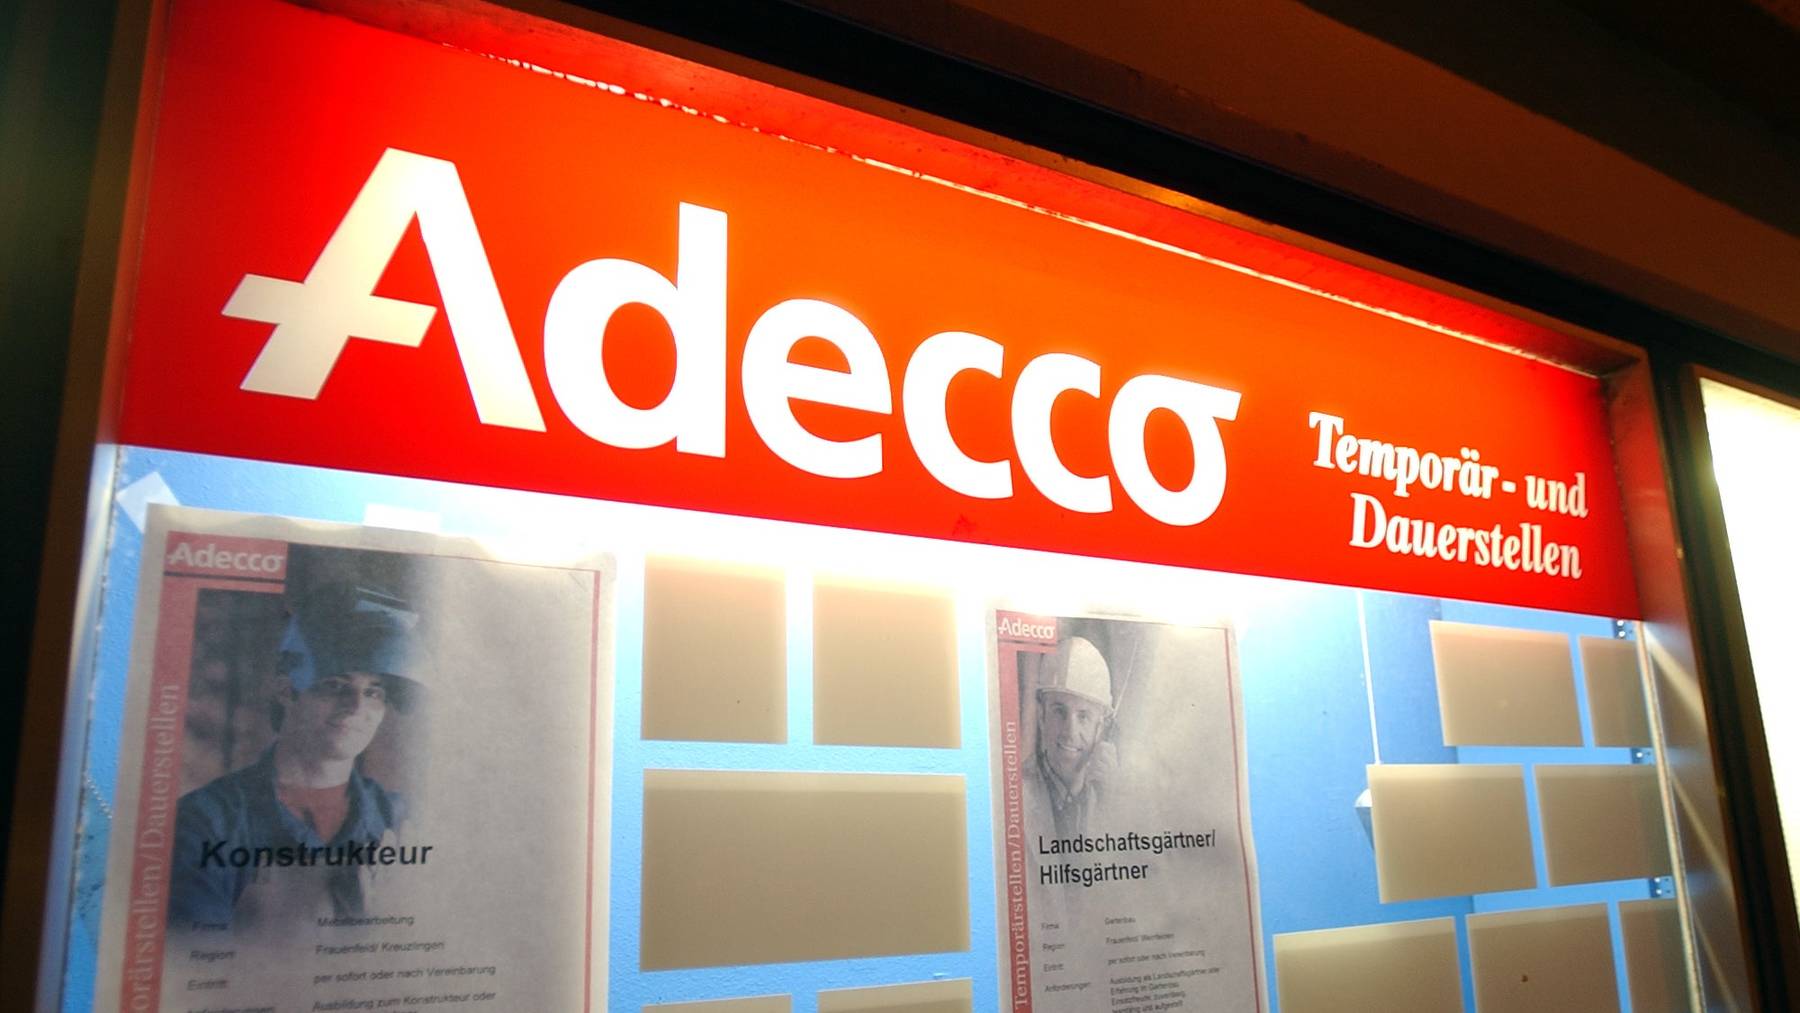 Trotz schwierigen Zeiten unter dem Strich gute Zahlen: Der weltweit tätige Stellenvermittler Adecco.